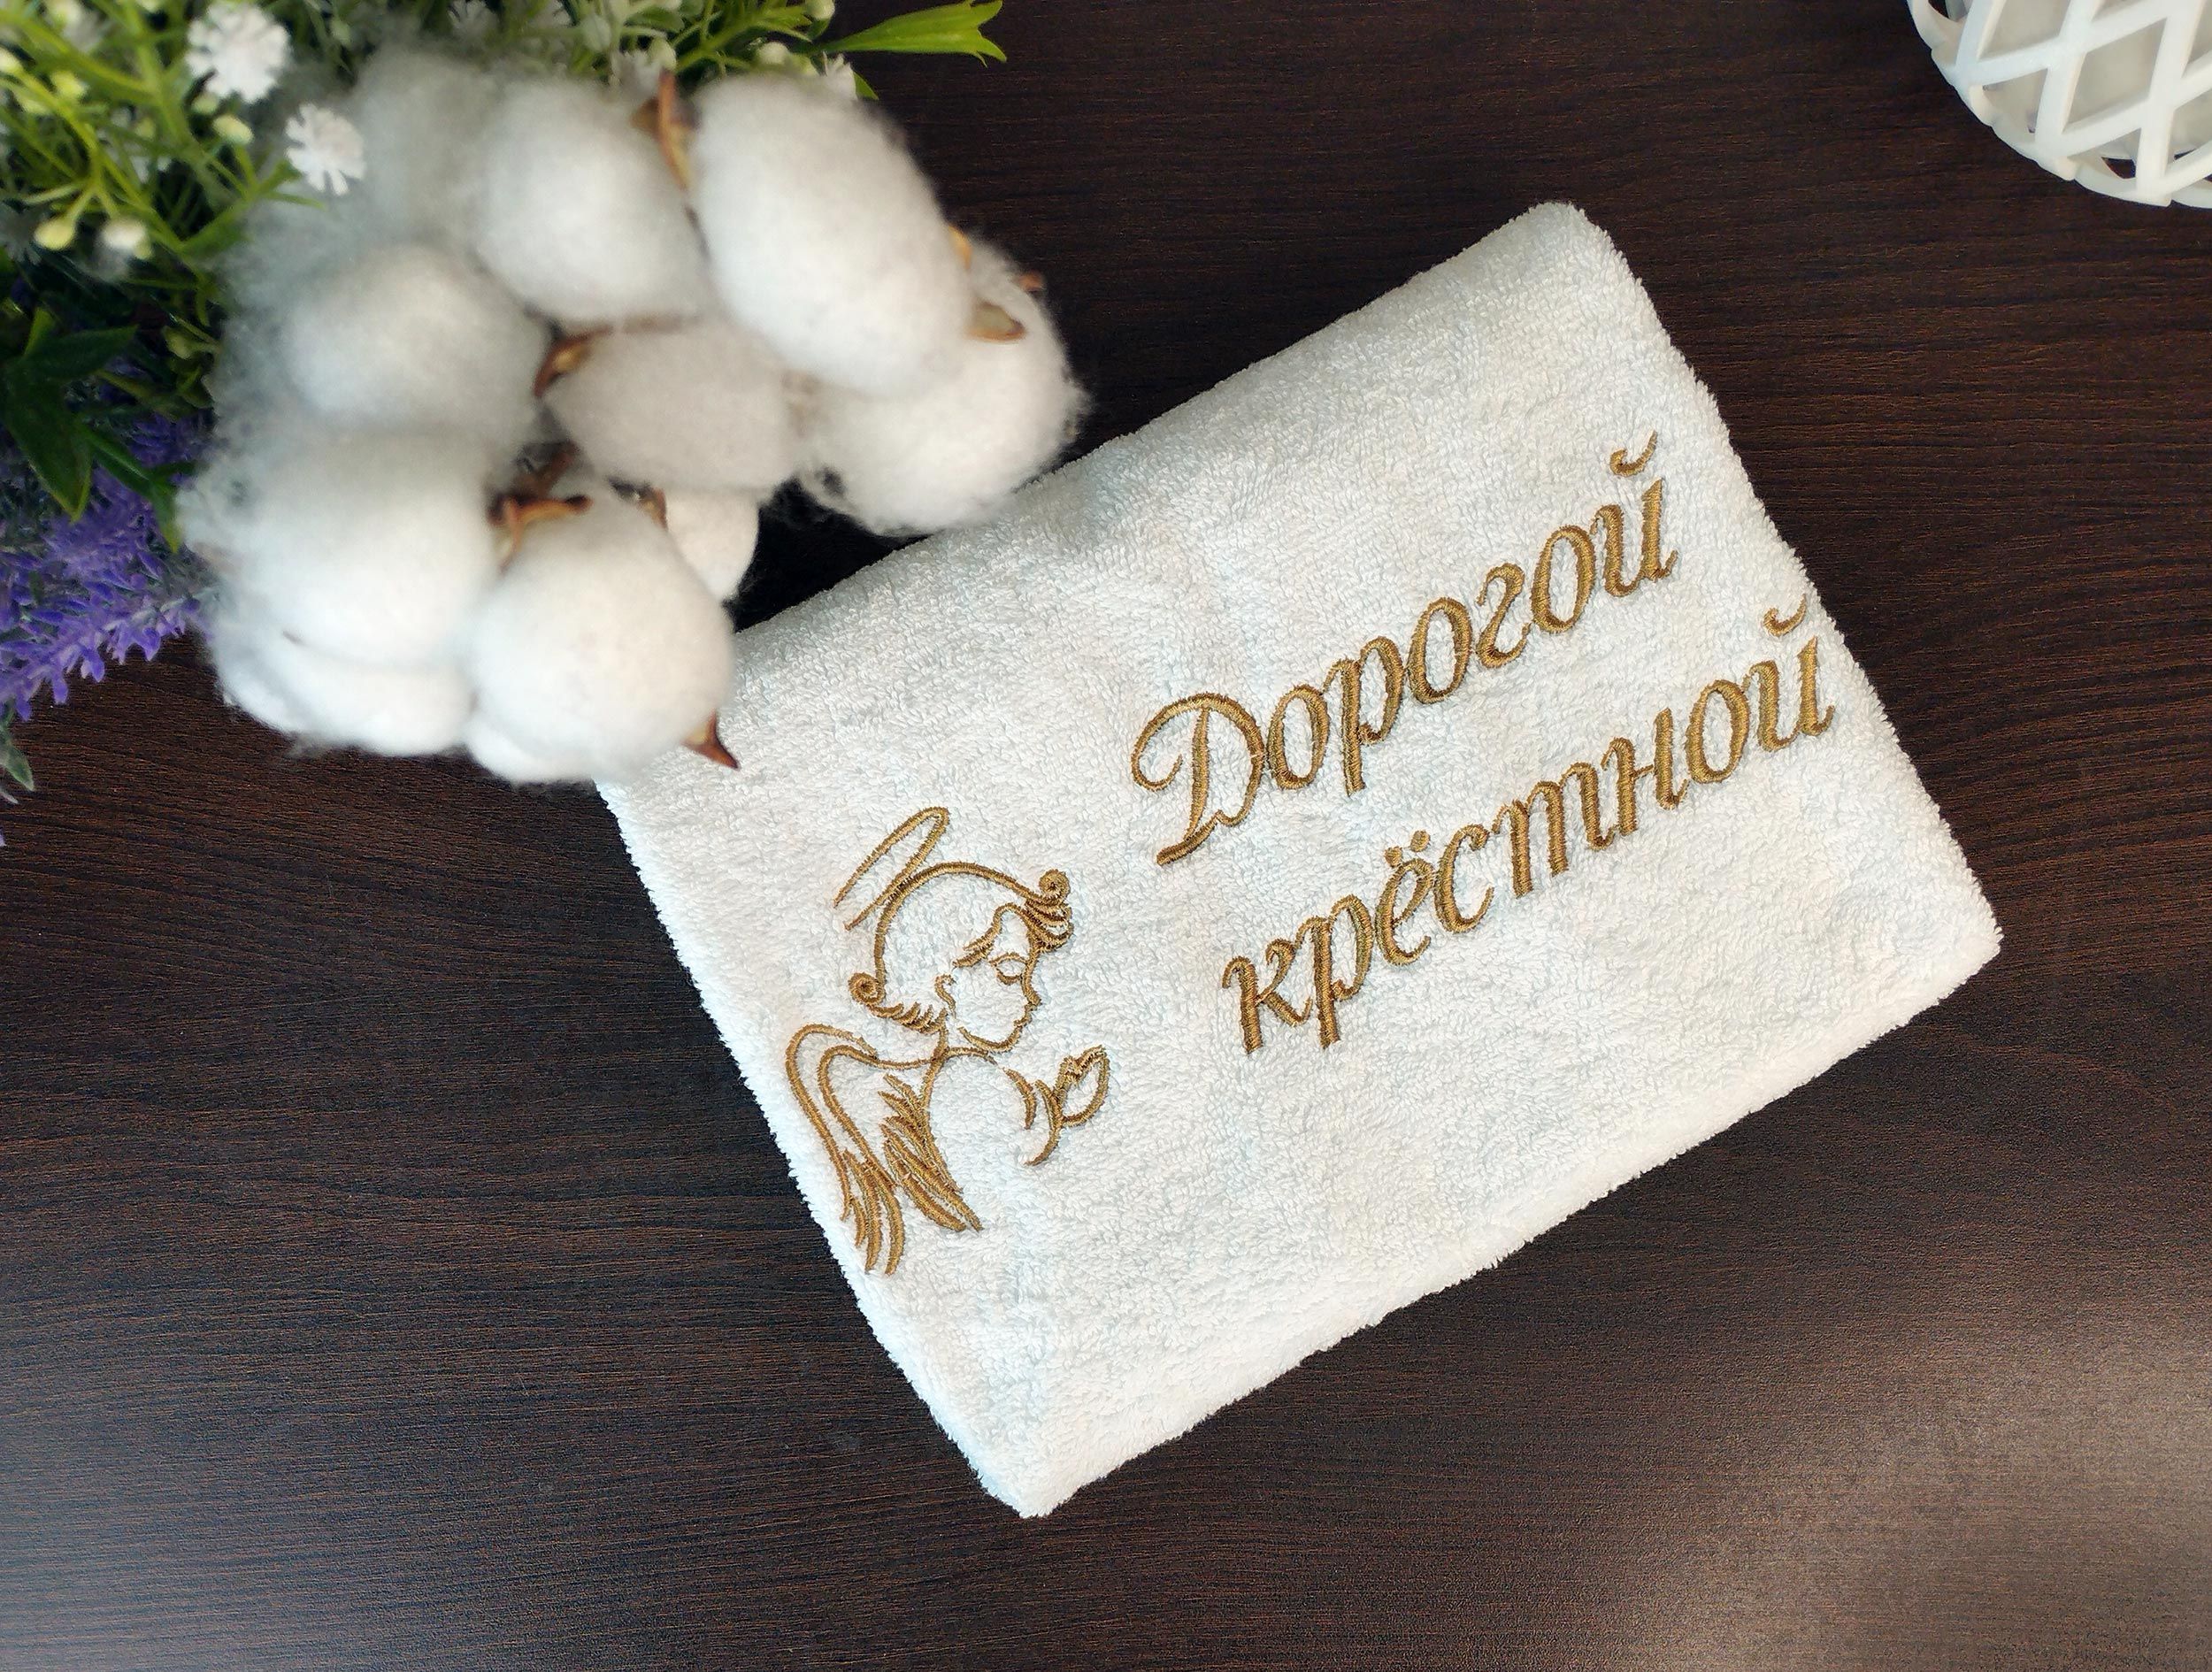 Подарочный набор махровых полотенец с вышивкой-надписью и изображением ангела 'Дорогой крестной' и 'Дорогому крестному'